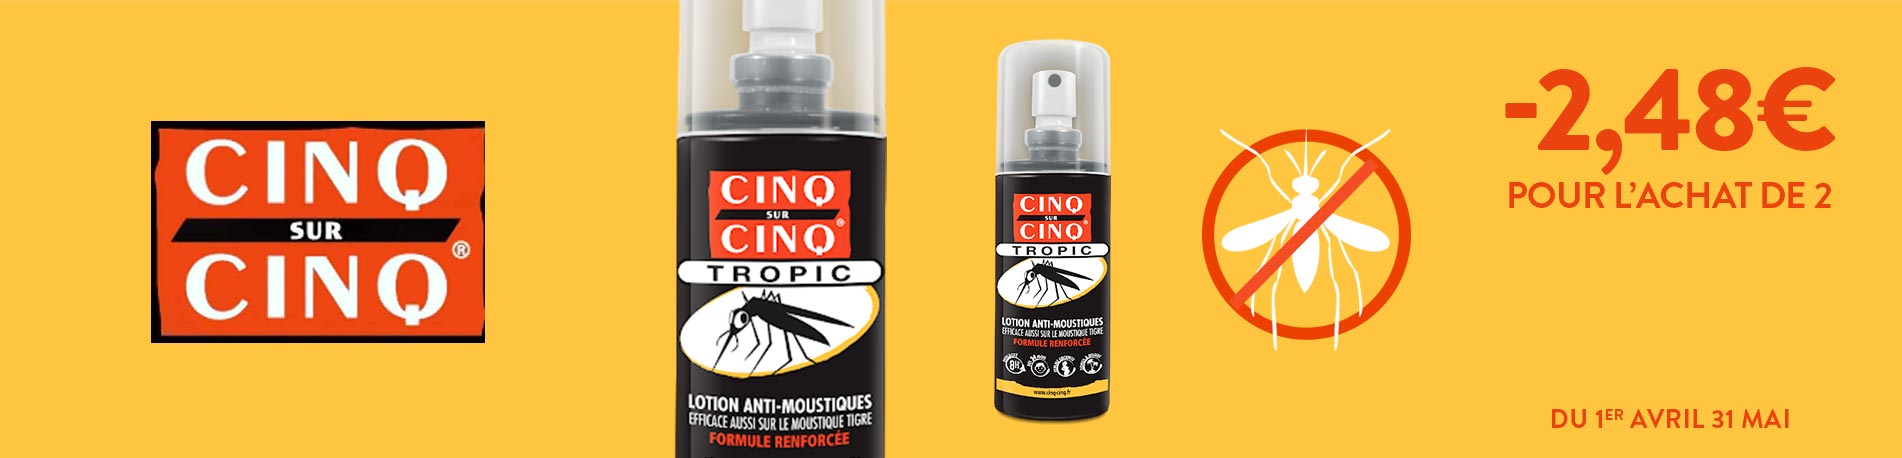 Cinq sur Cinq Tropic Lotion anti moustique - Achat en ligne